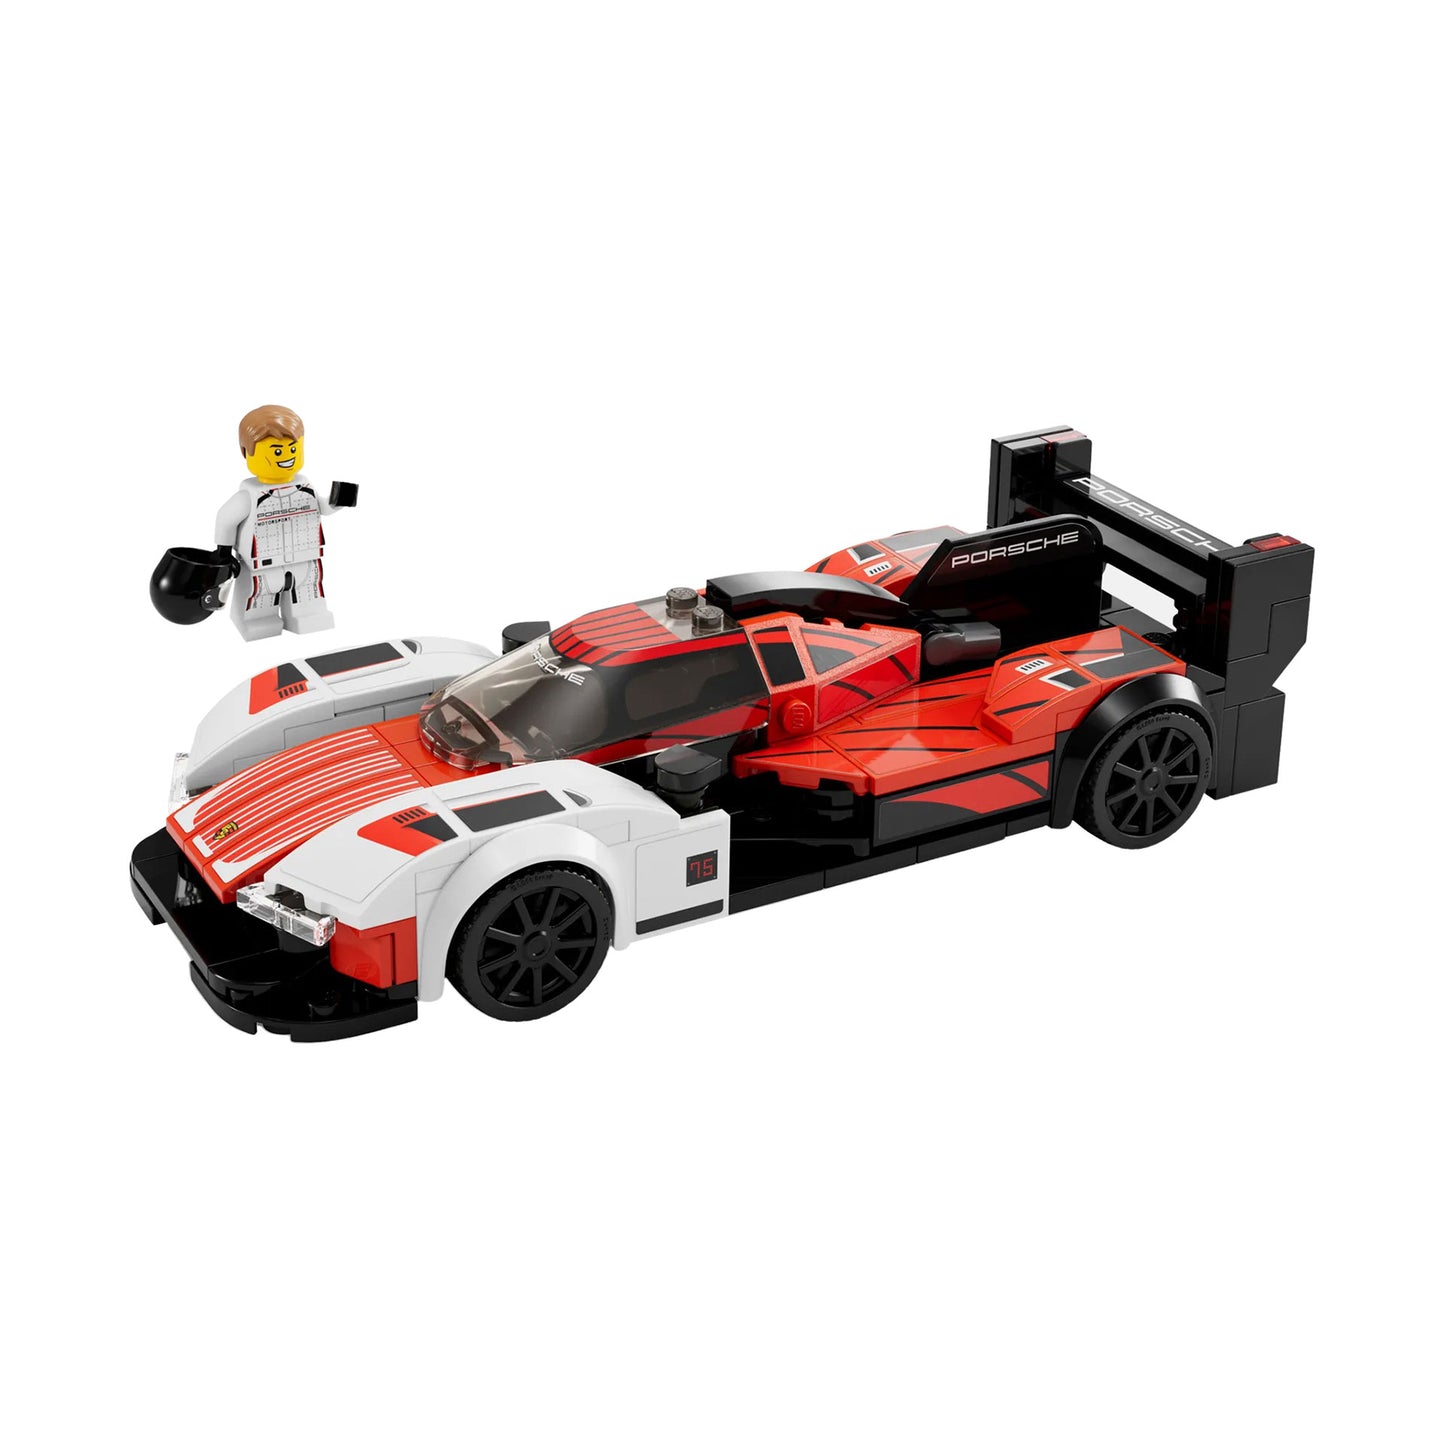 LEGO Porsche 963